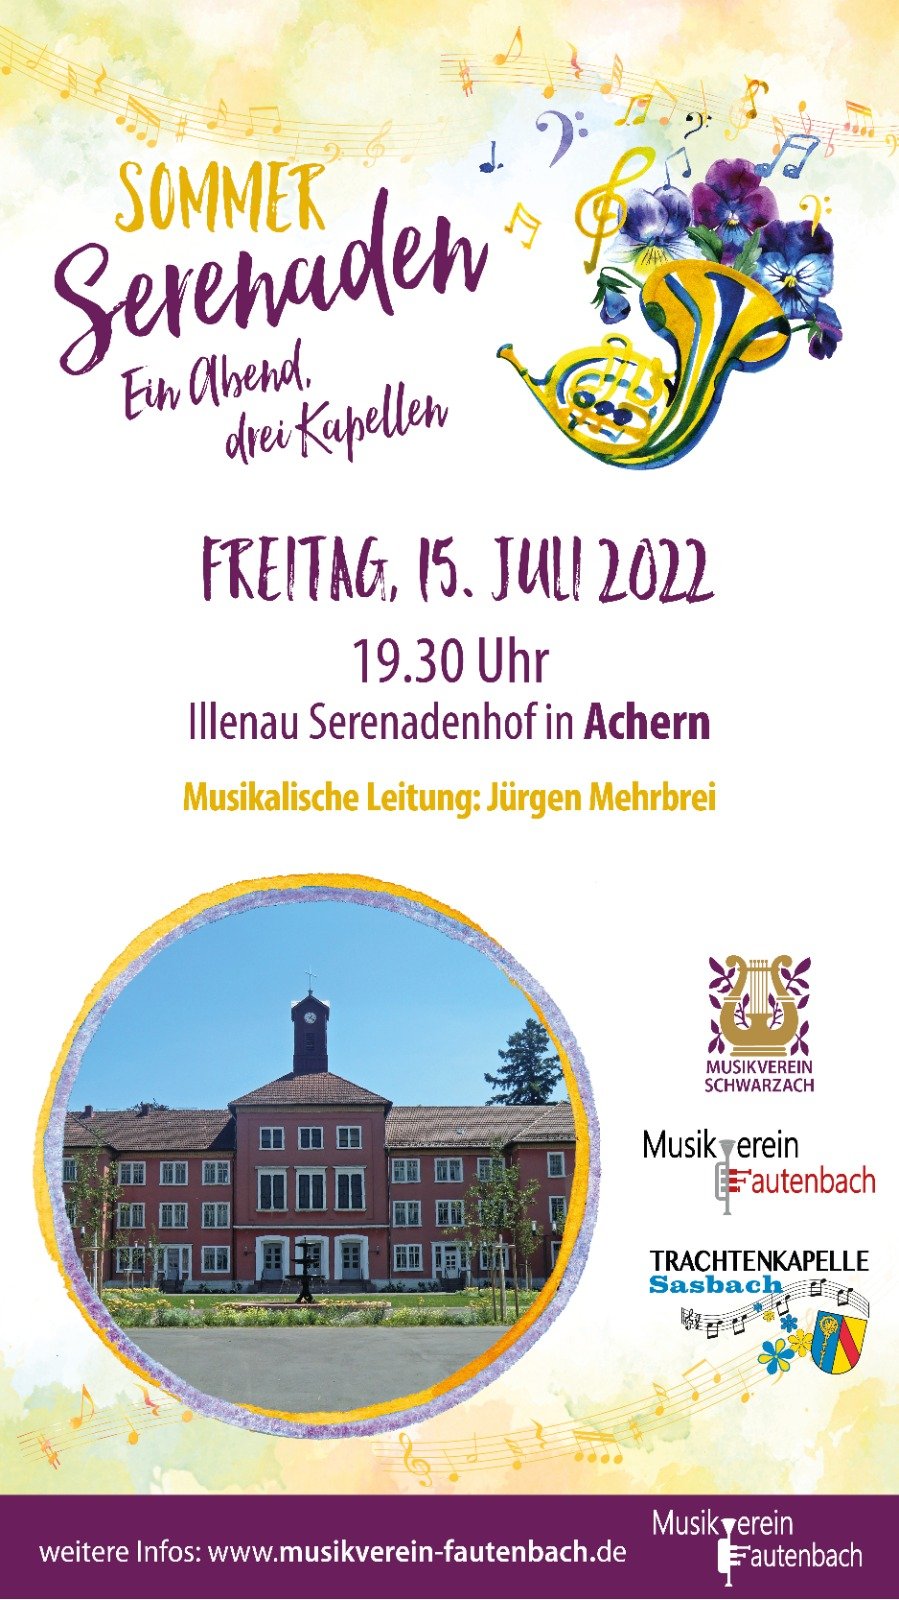 / Urheber: Musikverein Fautenbach